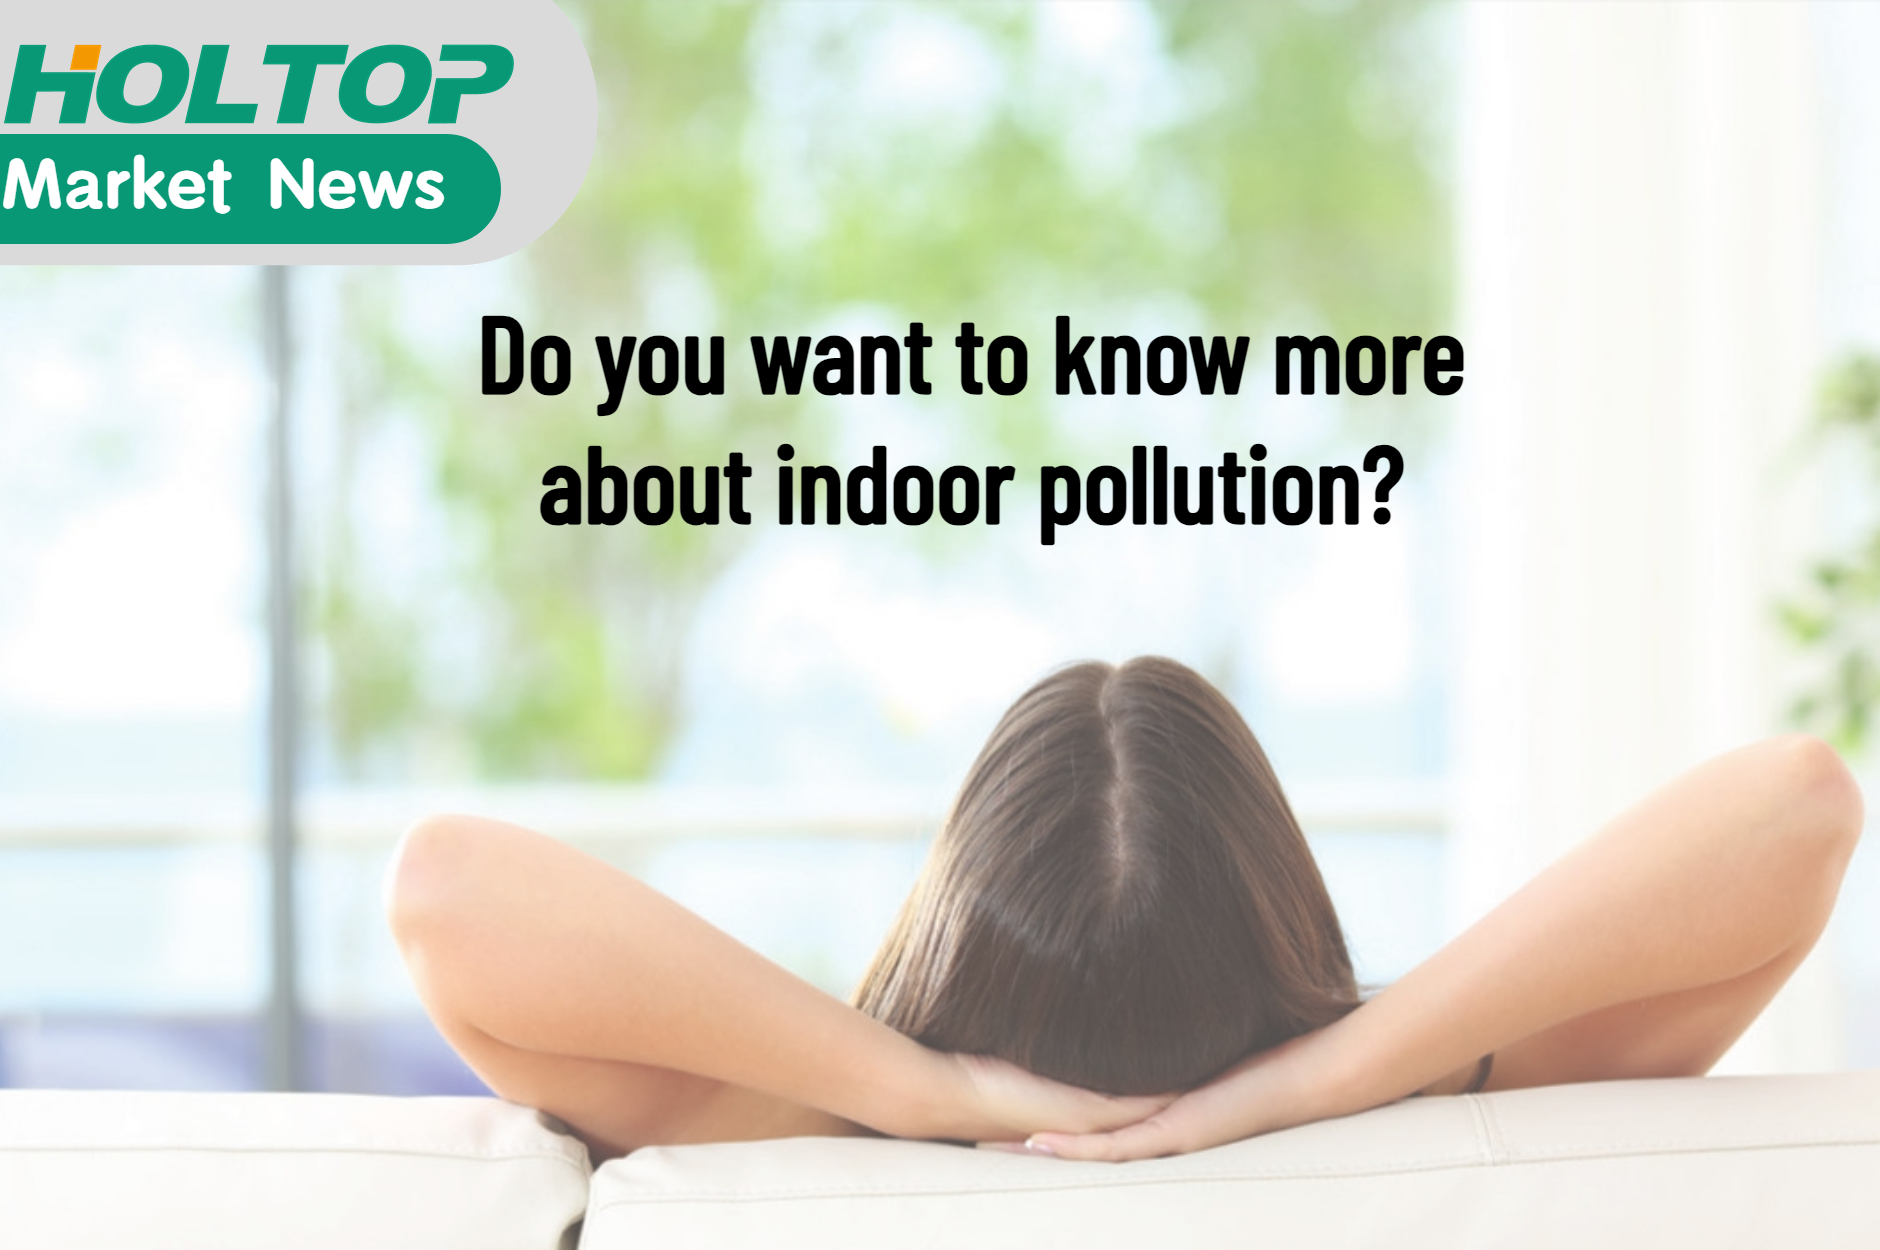 Chcete se dozvědět více o znečištění interiéru?